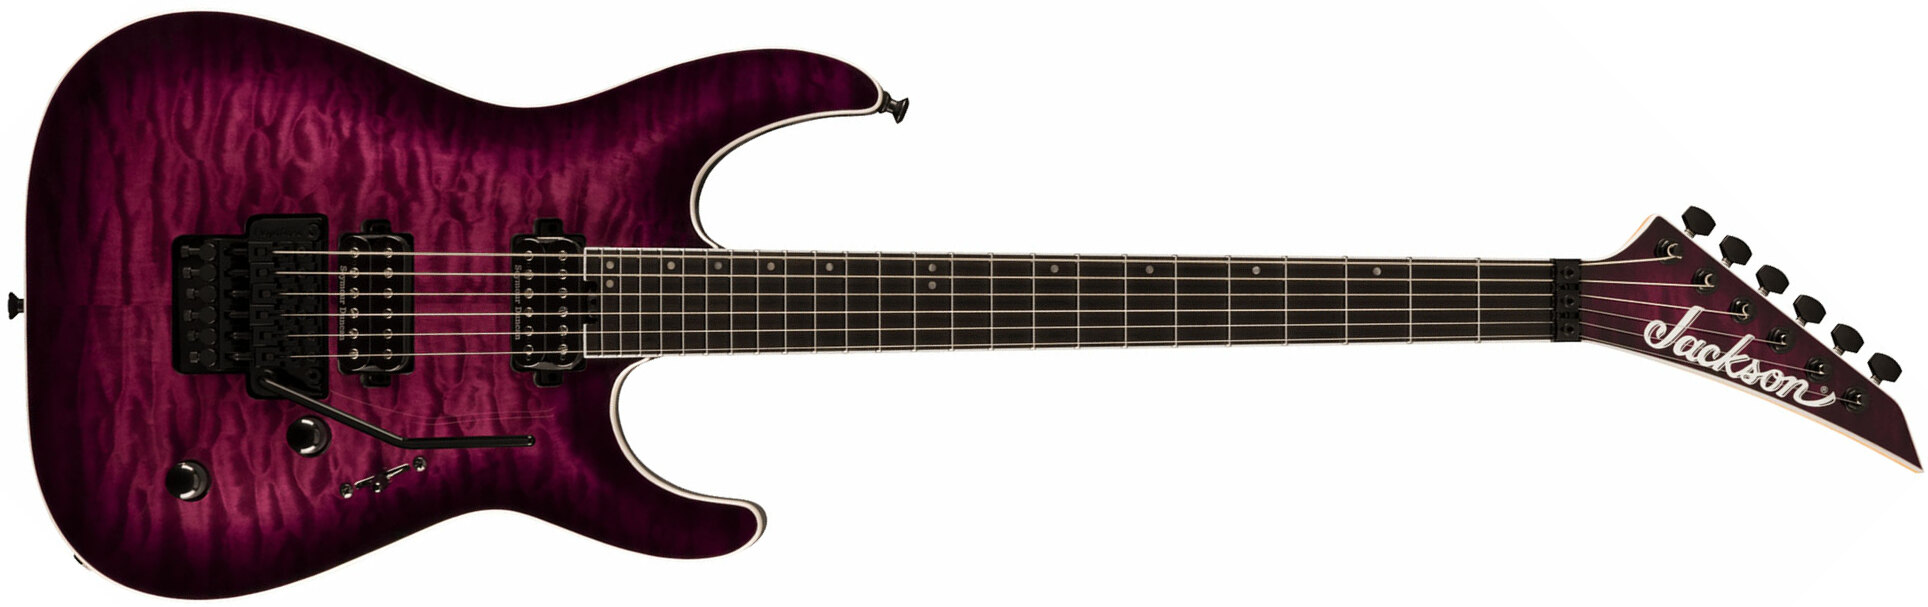 Jackson Dinky Dkaq Pro Plus 2h Seymour Duncan Fr Eb - Transparent Purple Burst - E-Gitarre in Str-Form - Main picture